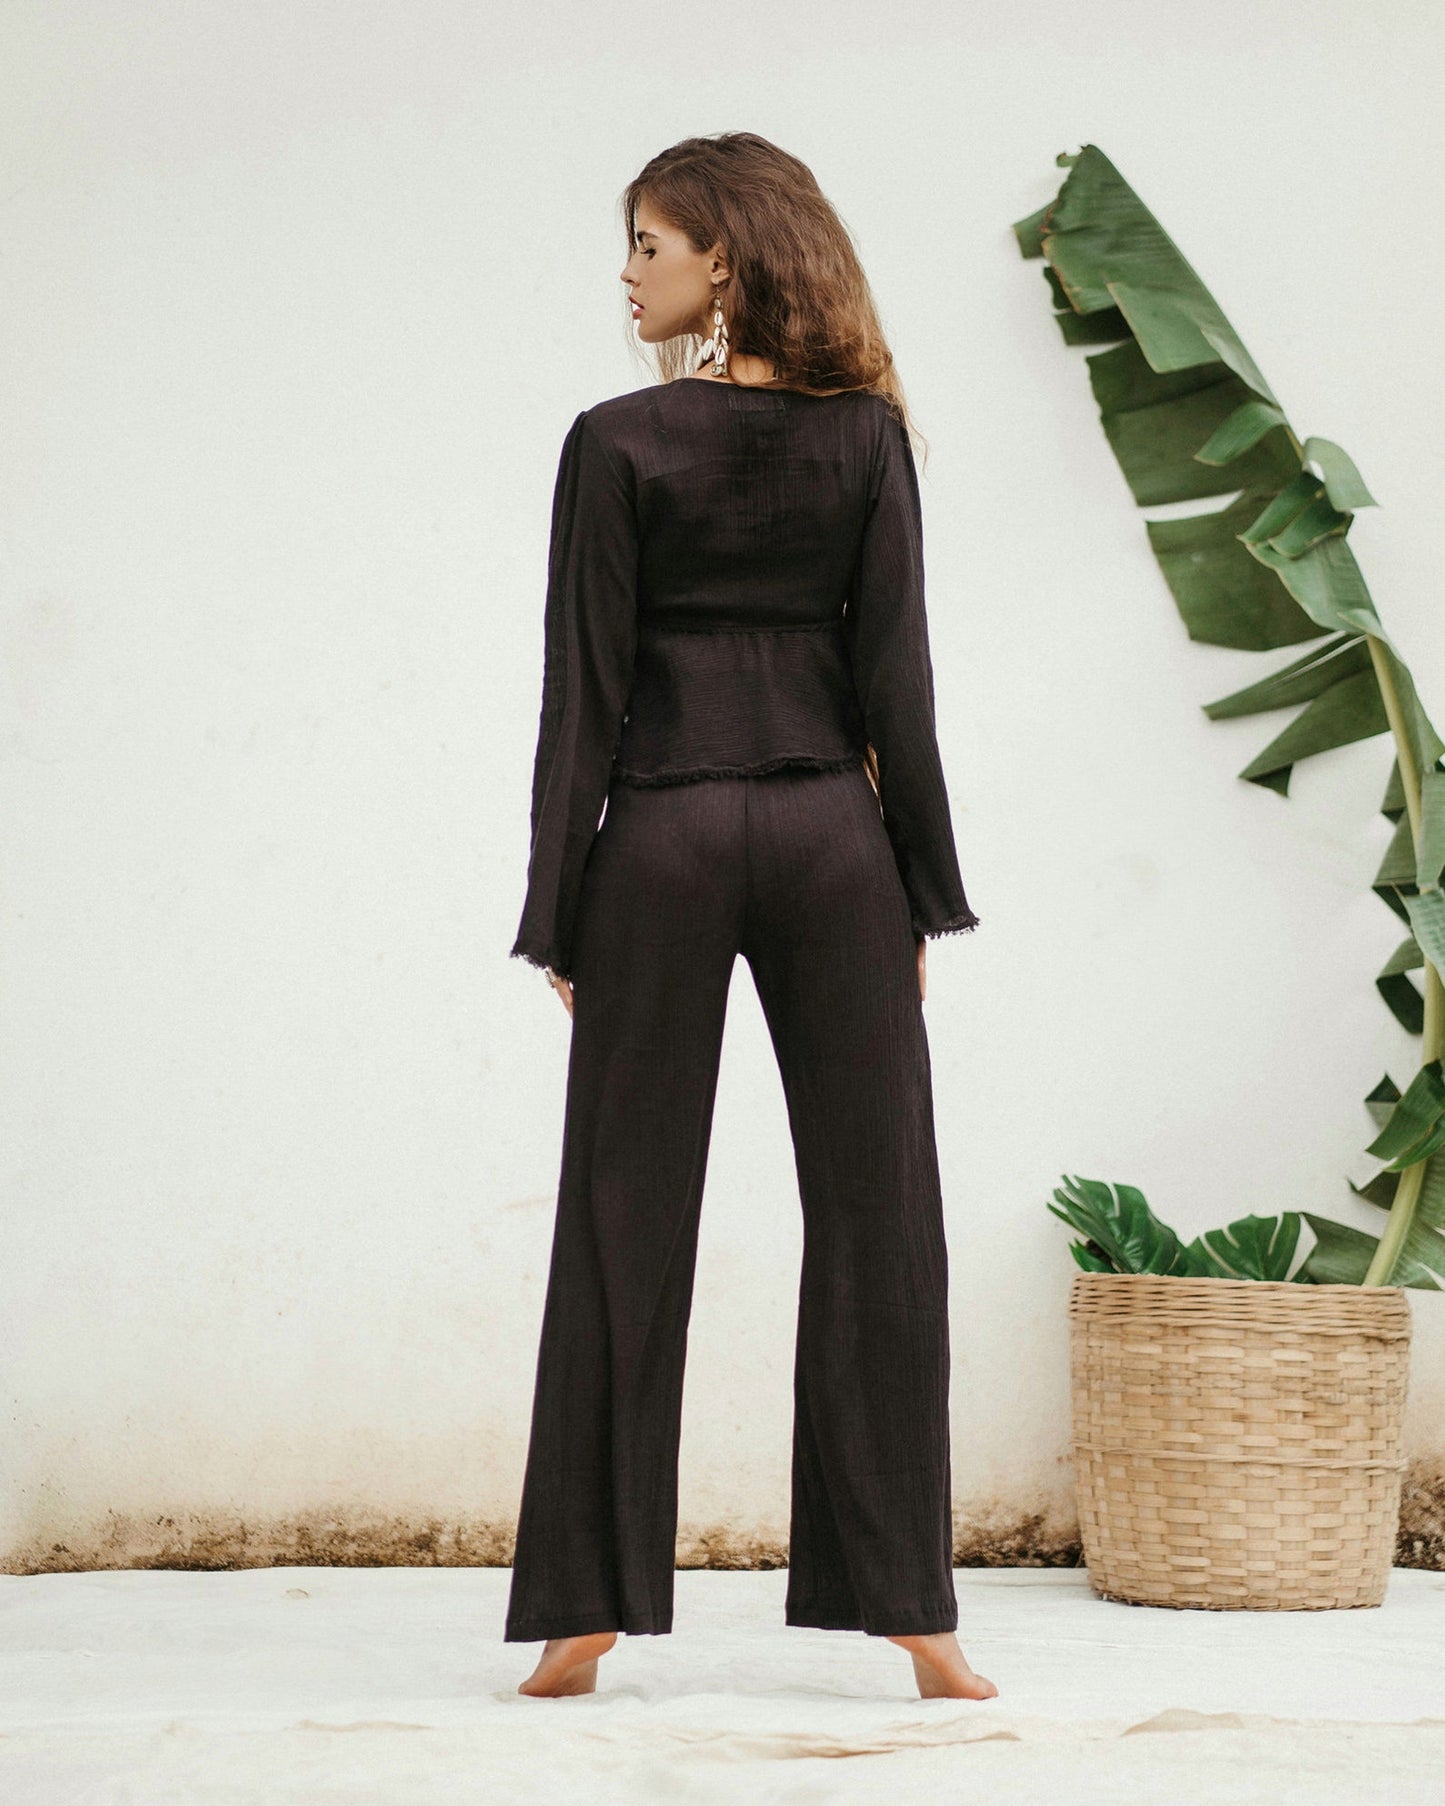 JASMINE top & BLOOMING palazzo pants in black